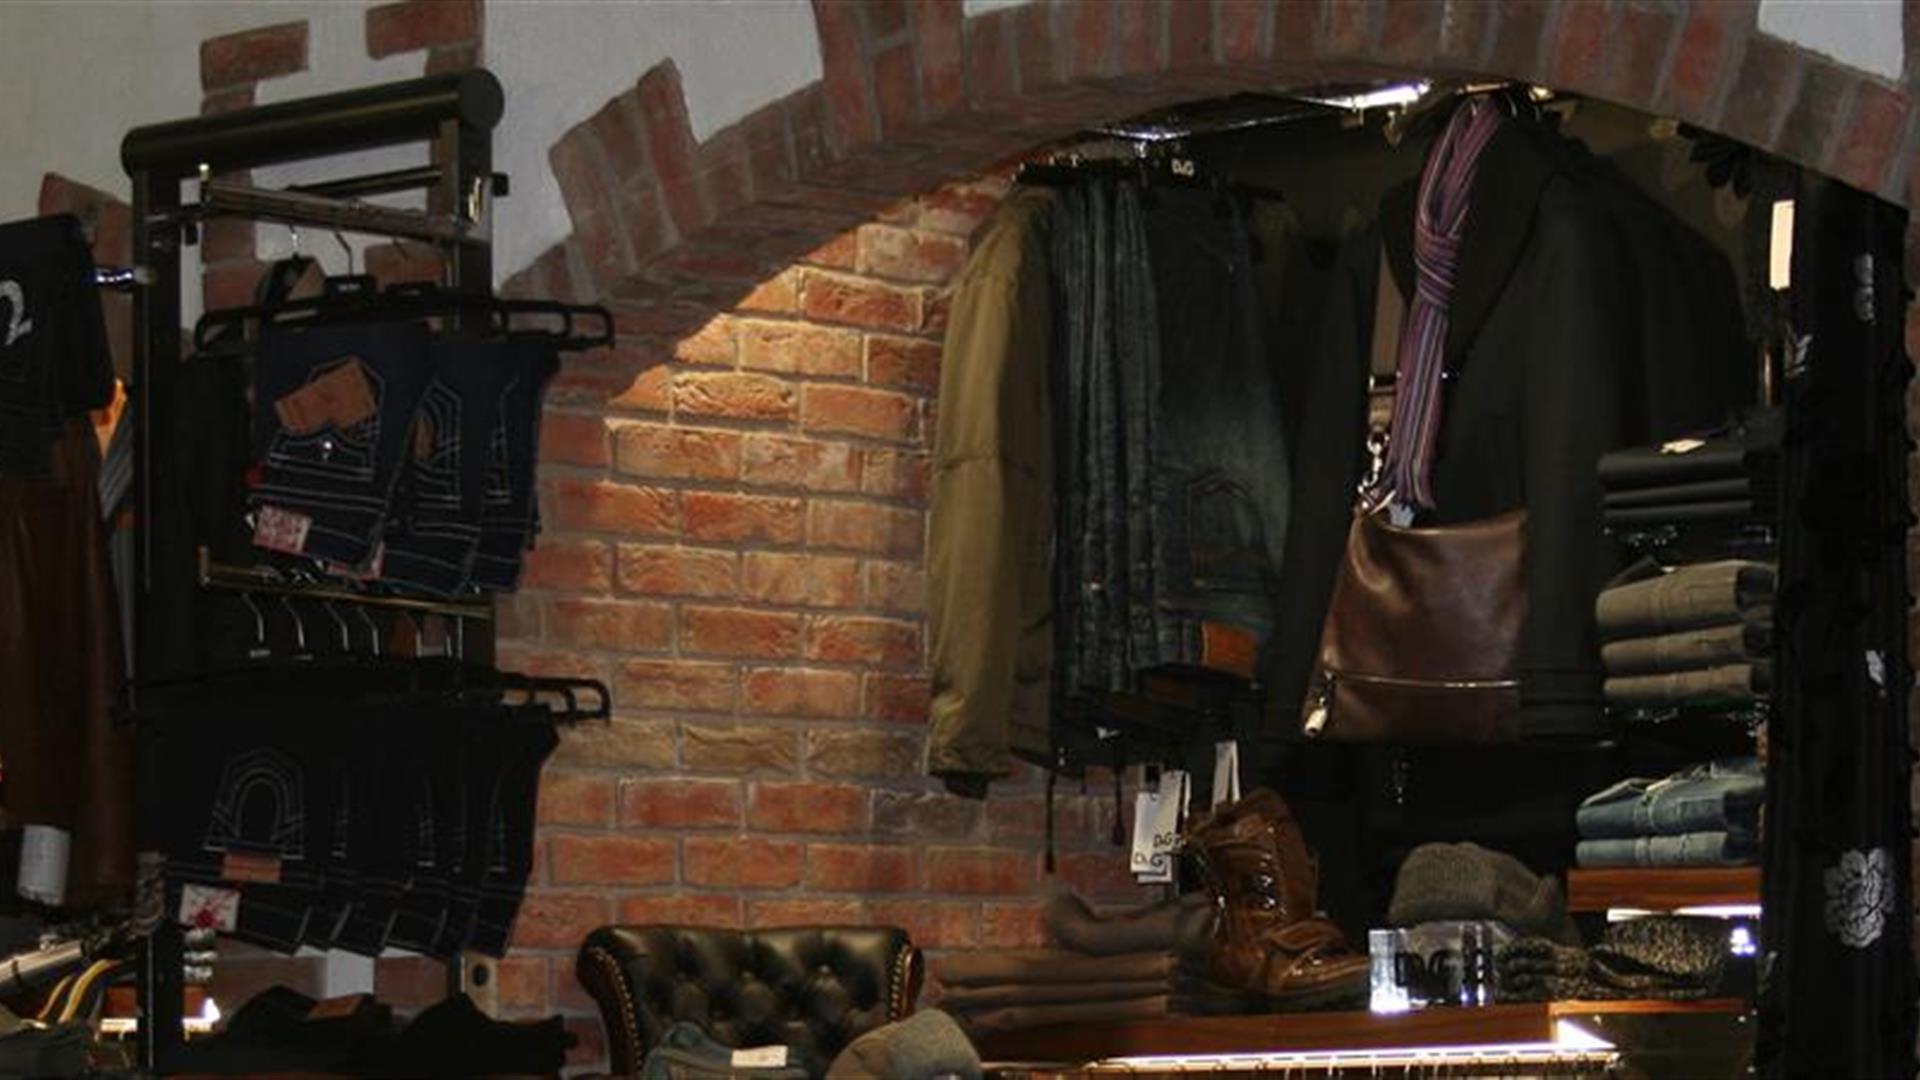 Image shows men's clothes for sale inside shop